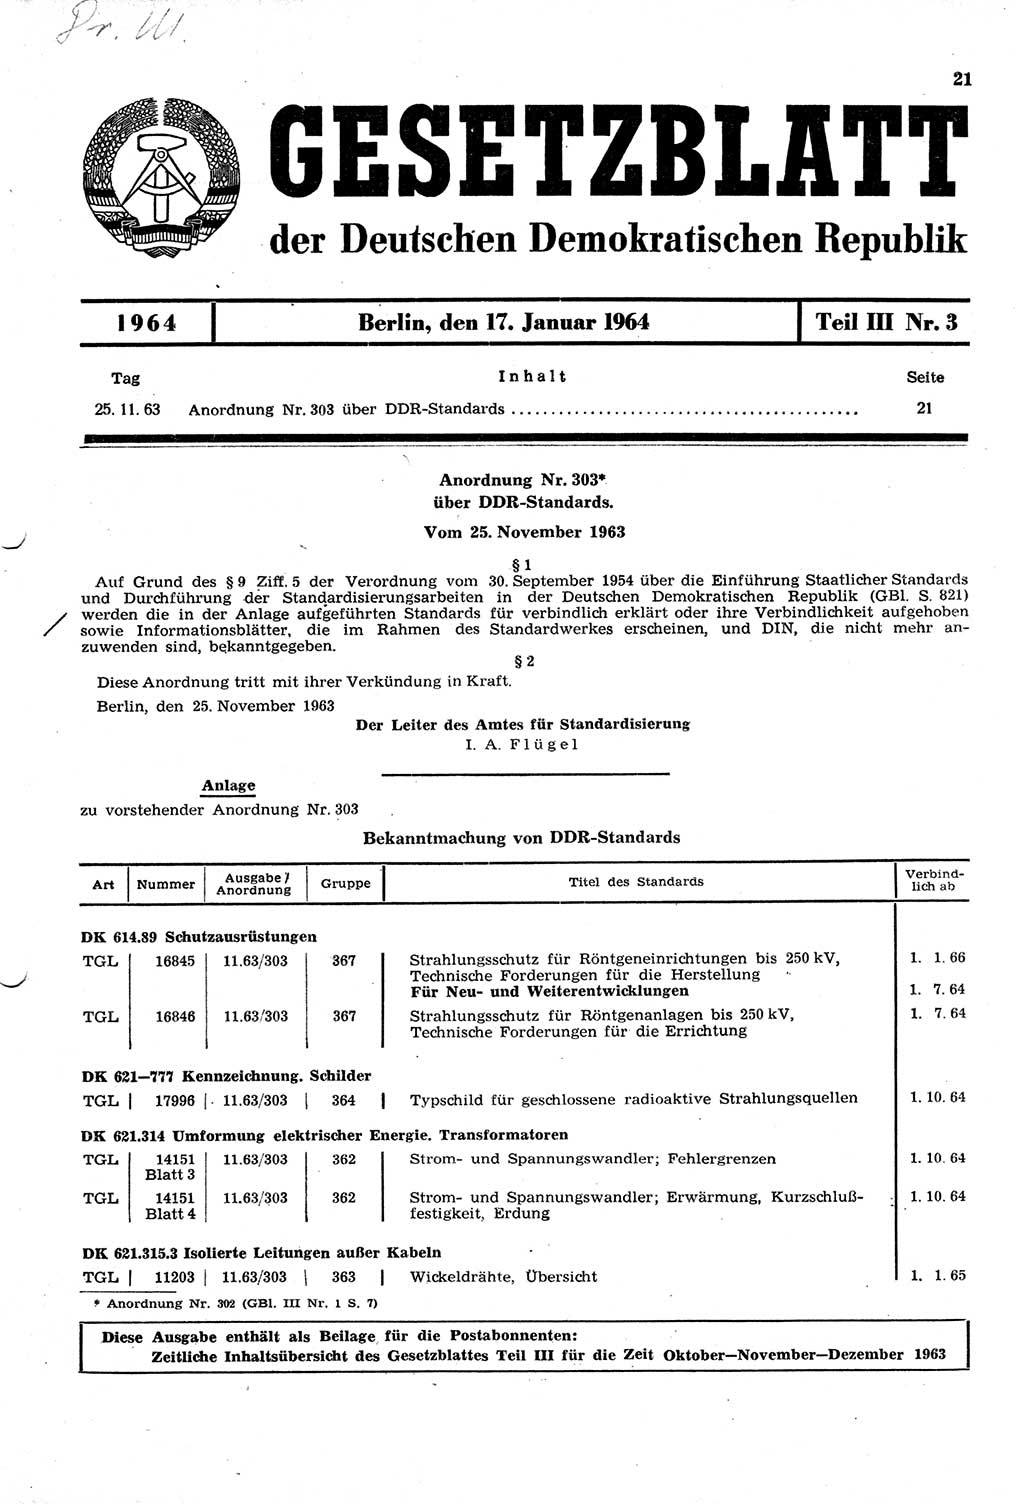 Gesetzblatt (GBl.) der Deutschen Demokratischen Republik (DDR) Teil ⅠⅠⅠ 1964, Seite 21 (GBl. DDR ⅠⅠⅠ 1964, S. 21)